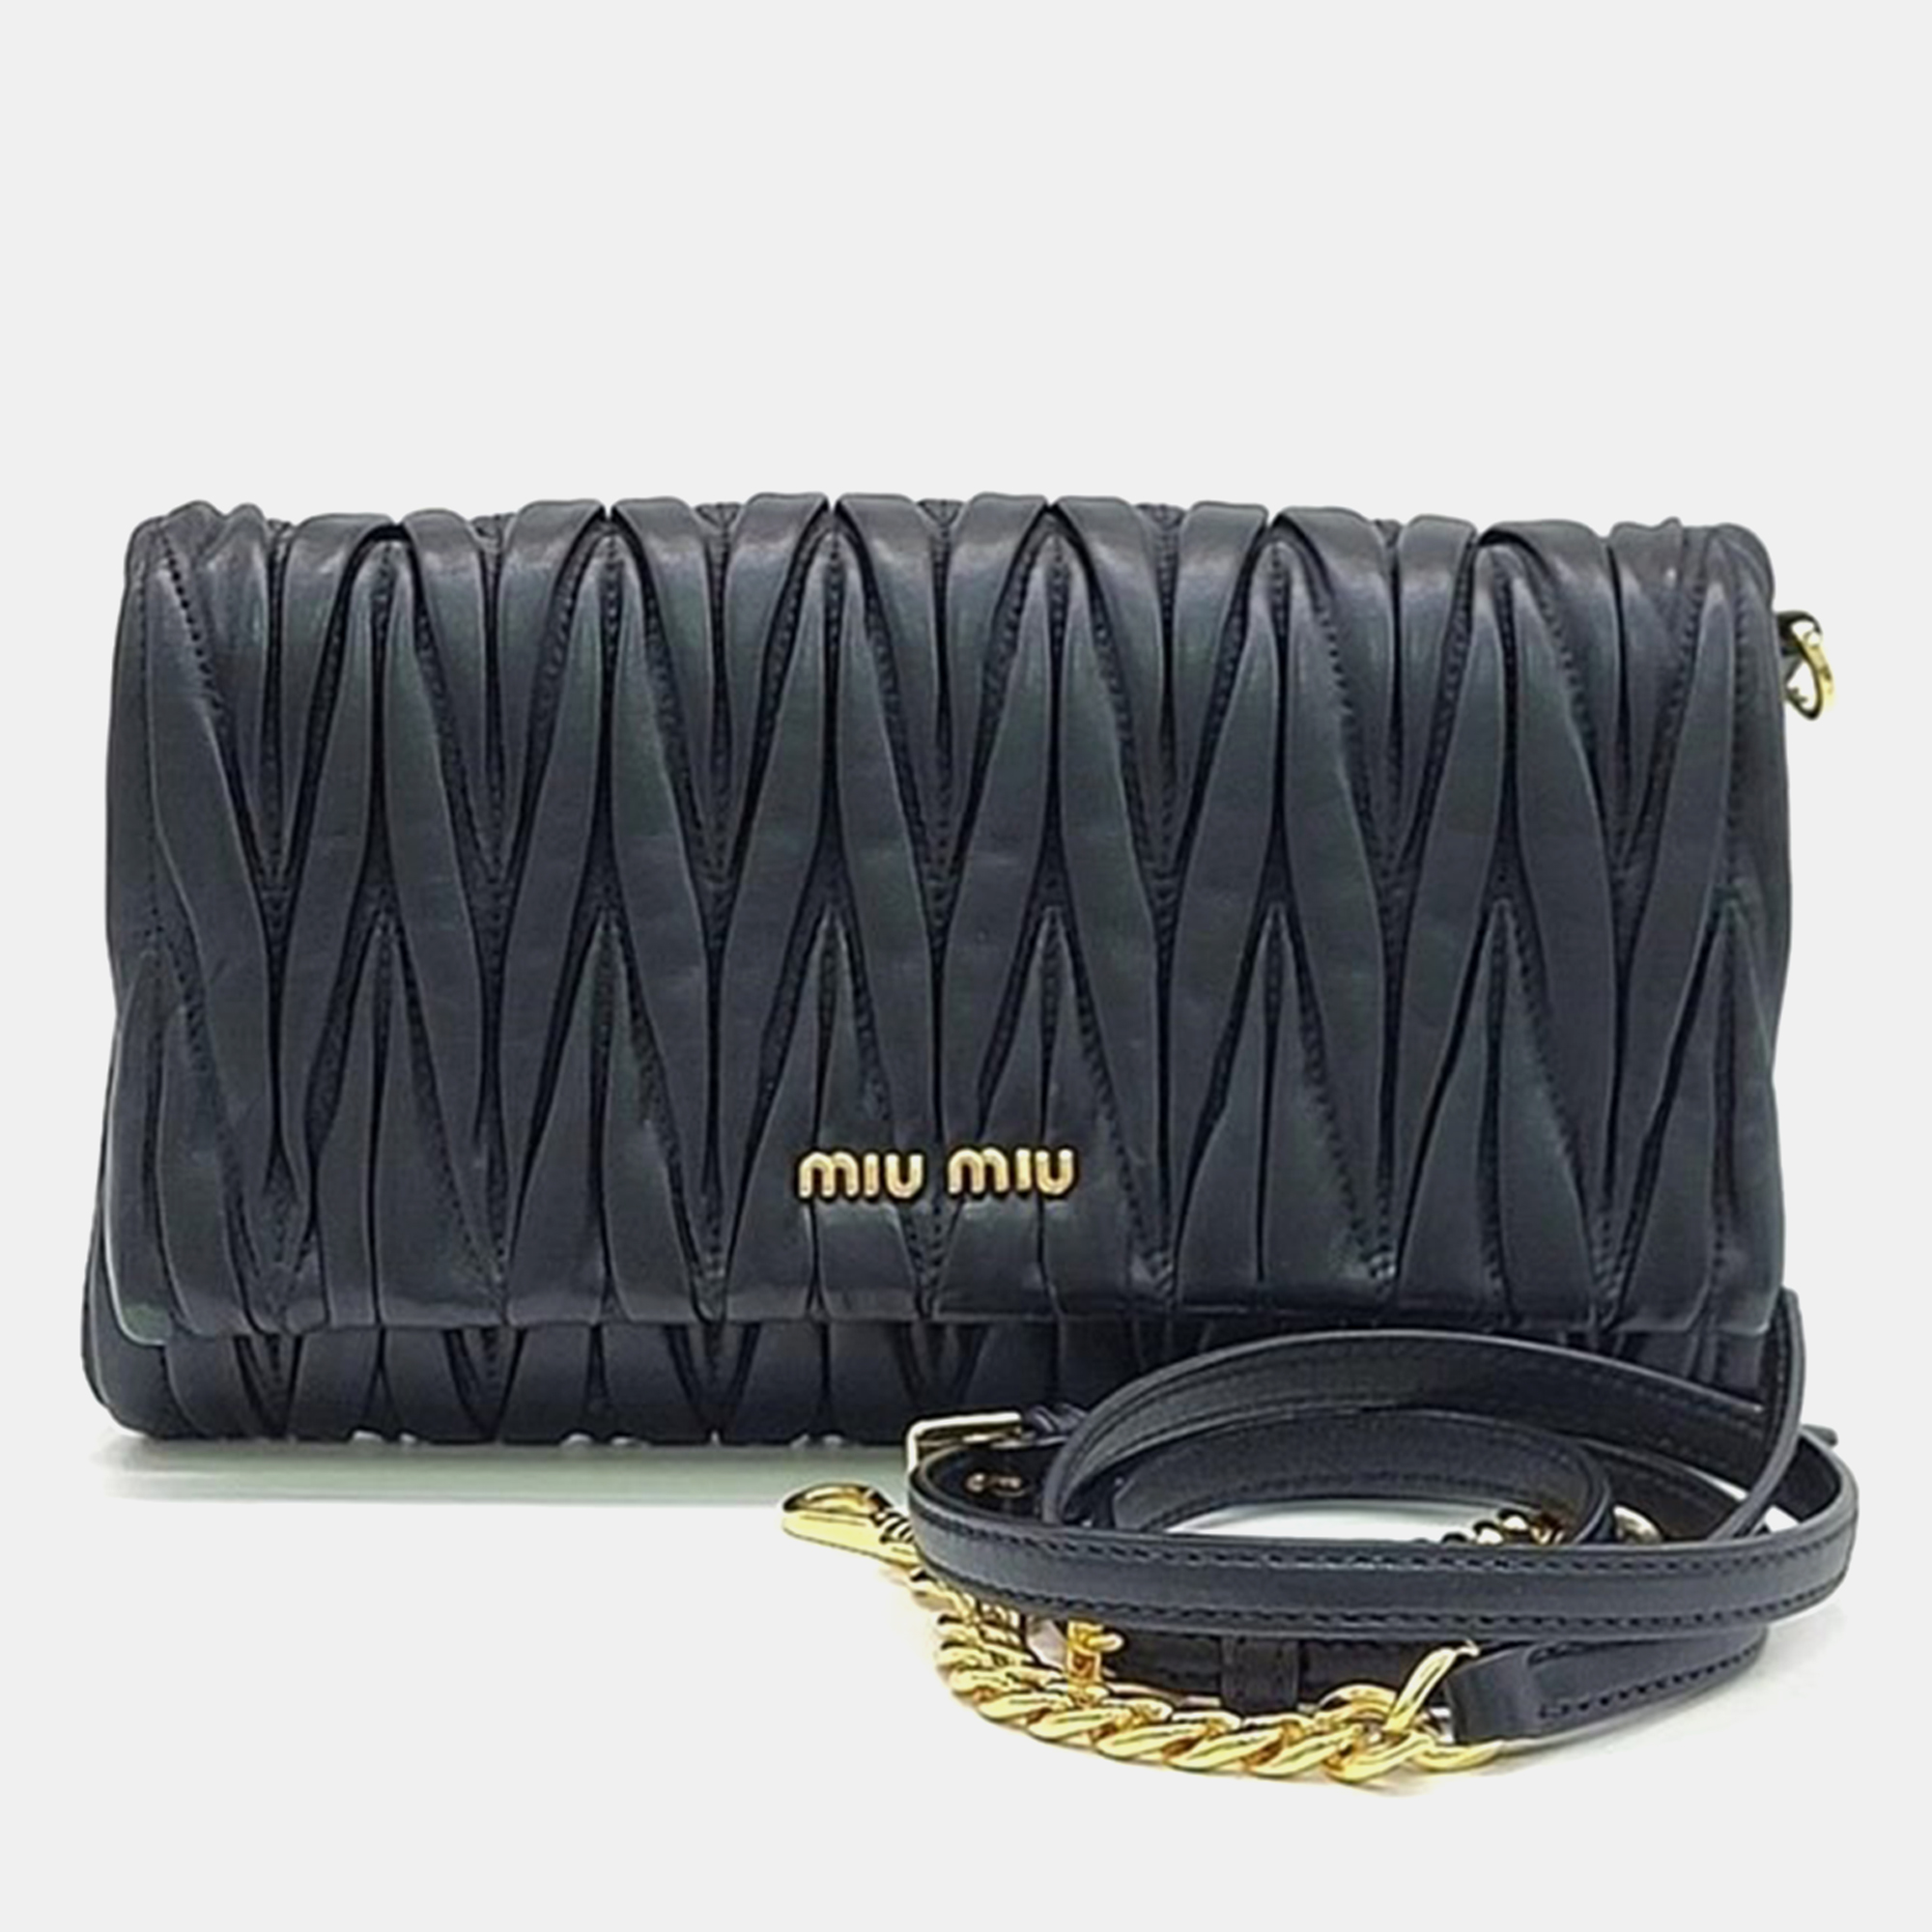 

Miu Miu Black Matelasse Leather Small Flap Crossbody Bag